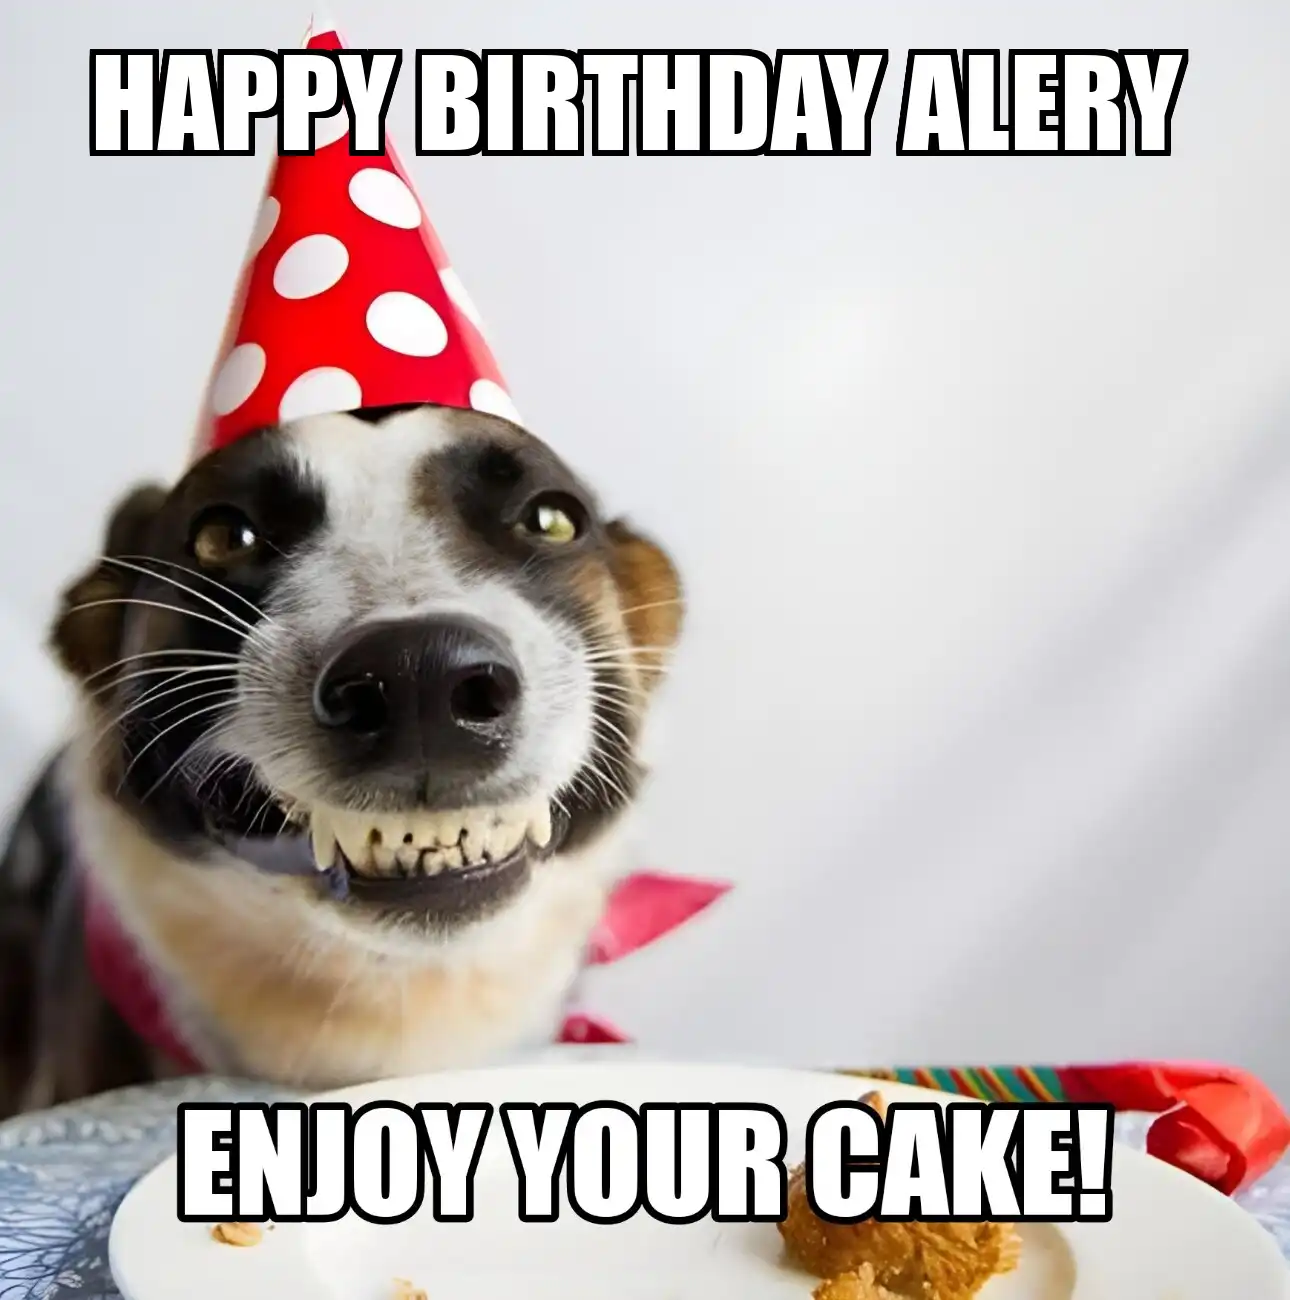 Happy Birthday Alery Enjoy Your Cake Dog Meme